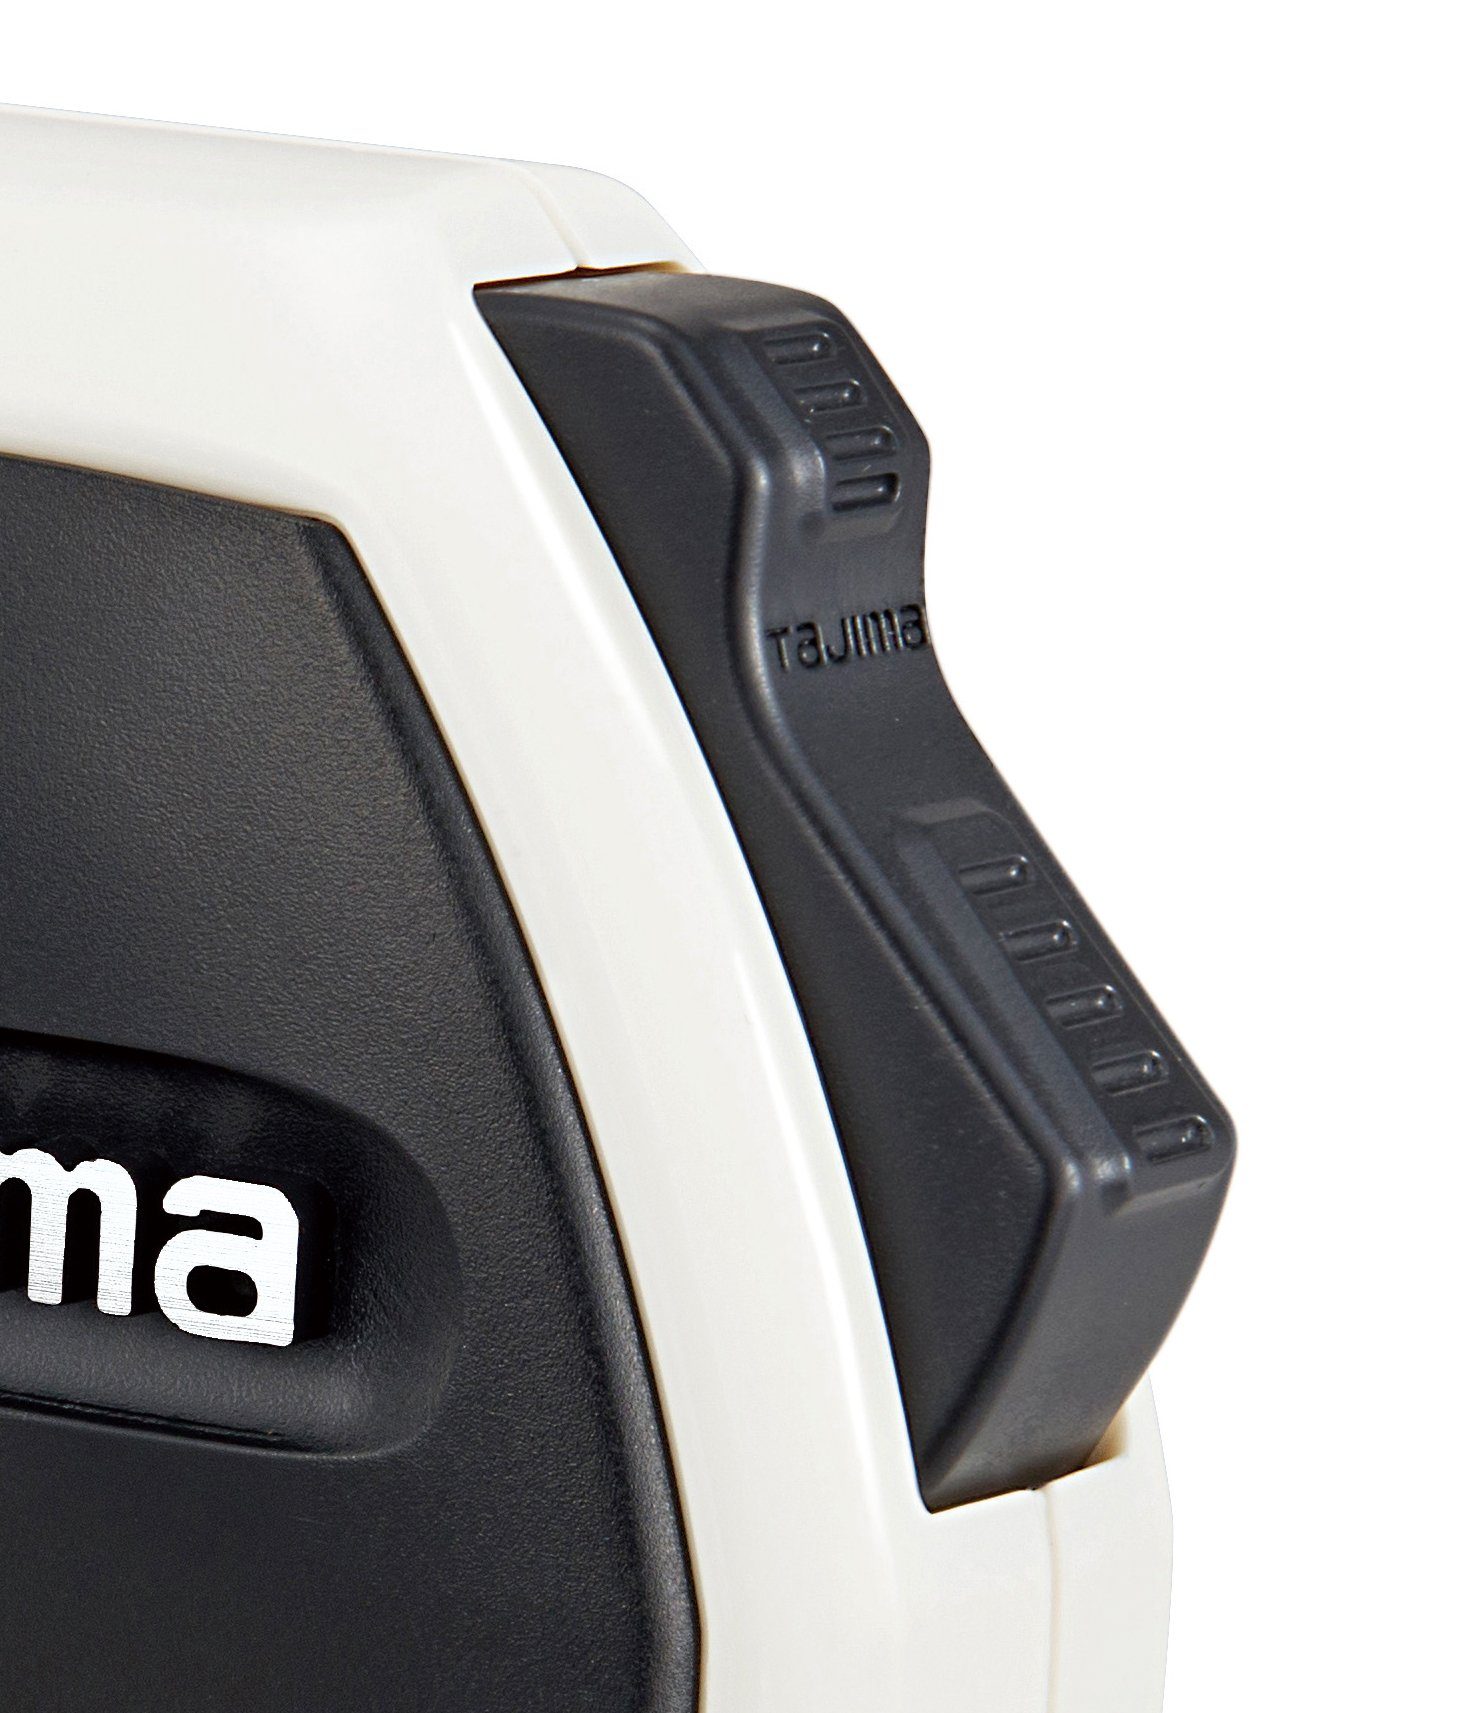 Tajima Maßband TAJIMA SIGMA STOP 3m/16mm TAJ-21967 Bandmass weiss